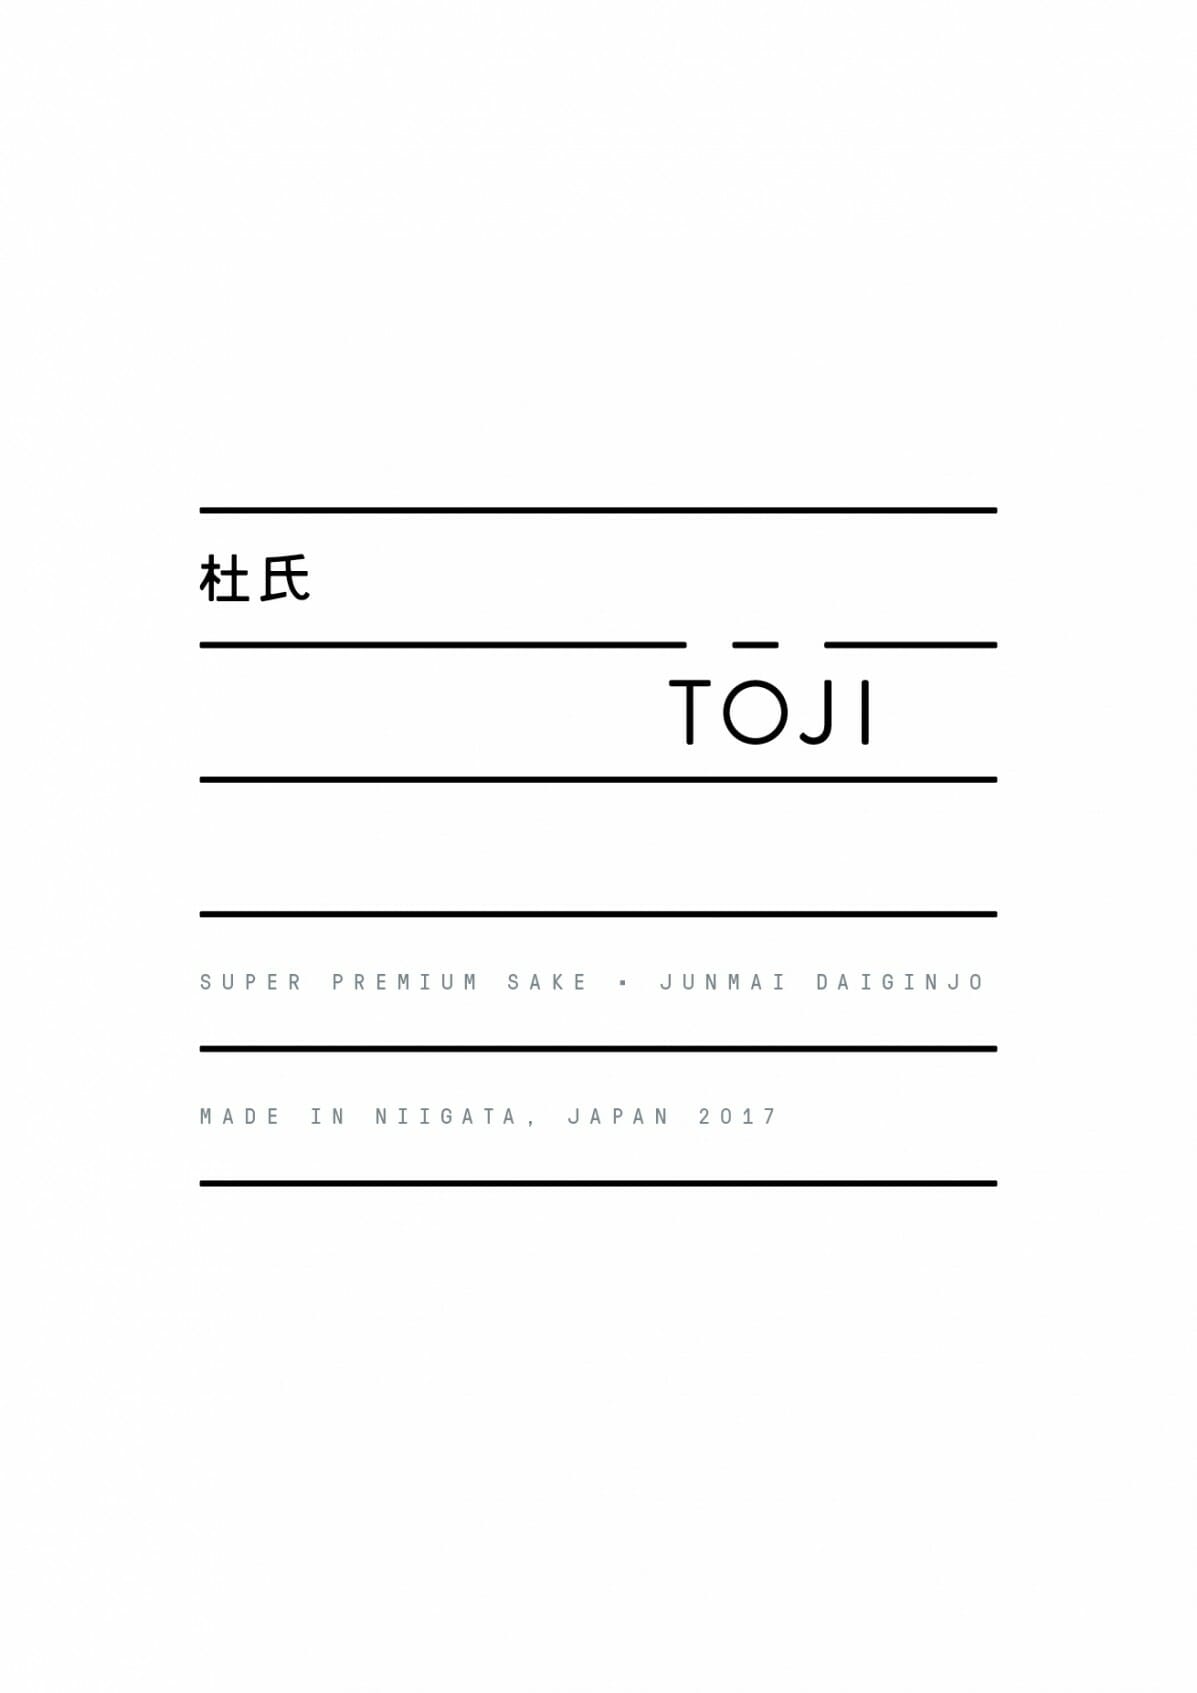 Label Design for exciting new Sake brand TOJI Sake in Melbourne.